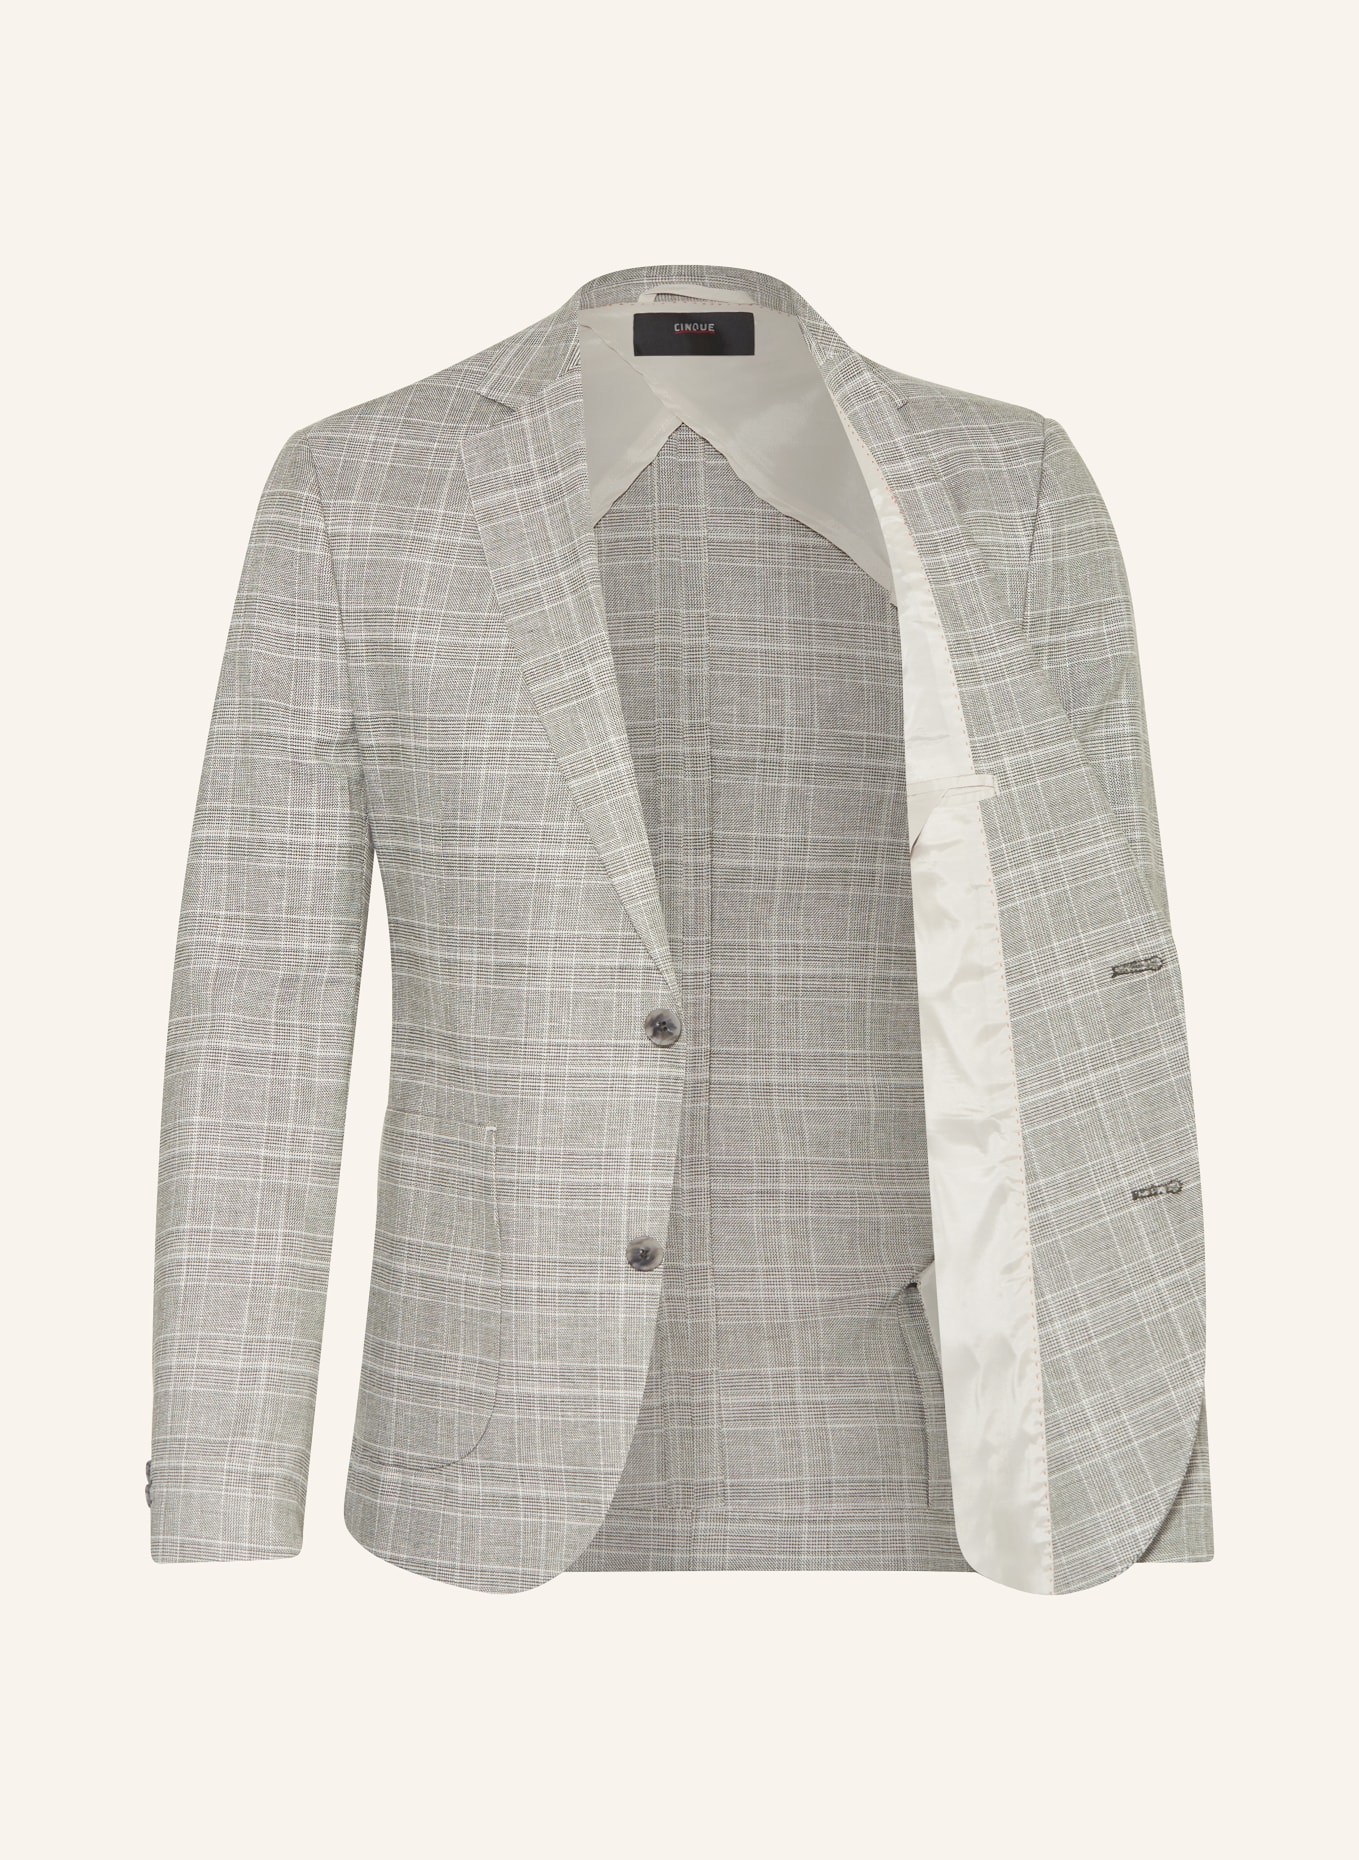 CINQUE Suit jacket CIDATI regular fit, Color: 82 hellgrUEn (Image 4)